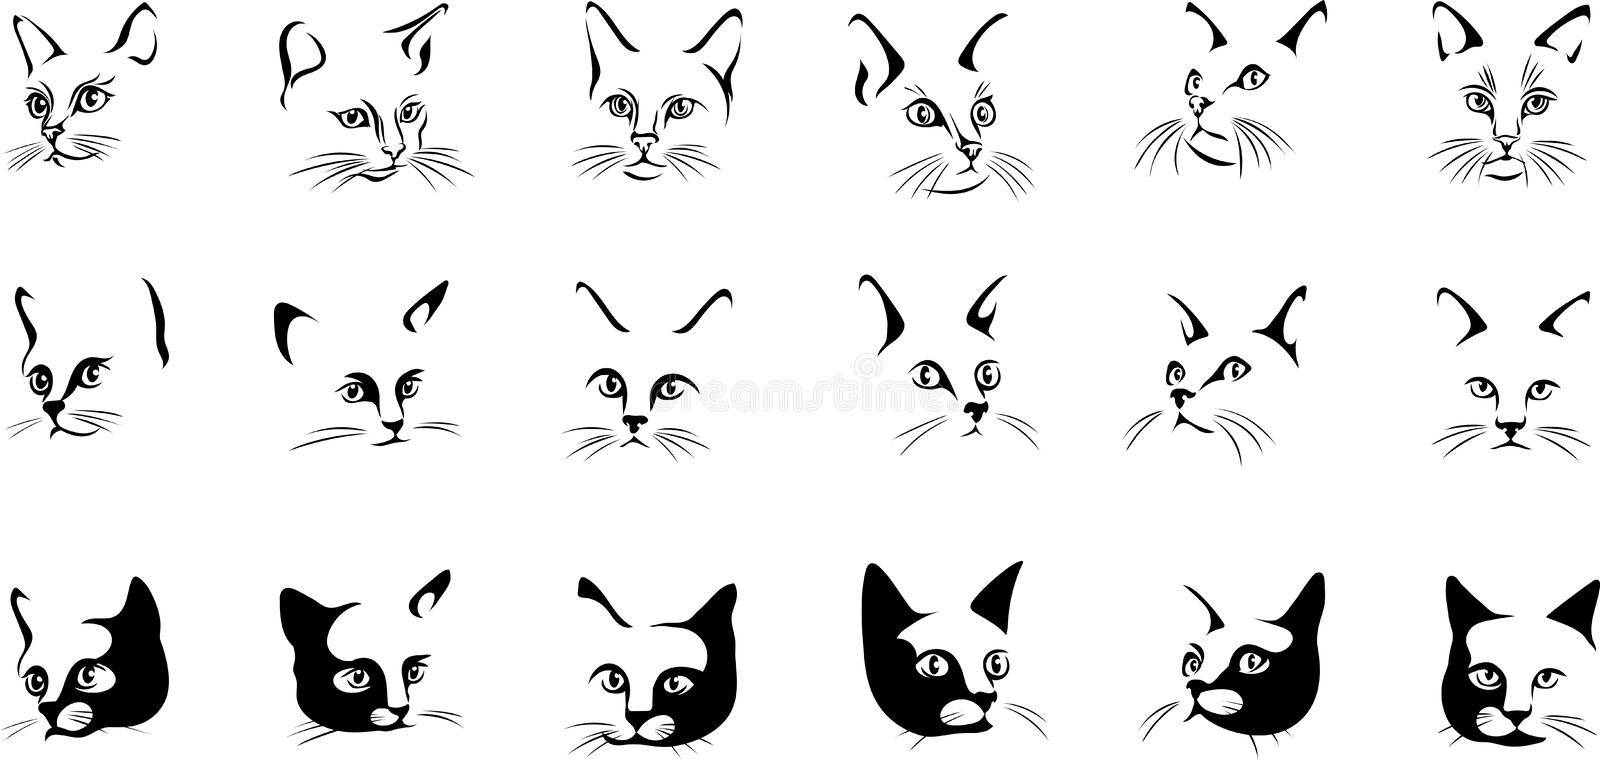 Как нарисовать кошку поэтапно карандашом — три легких мастер-класса для начинающих